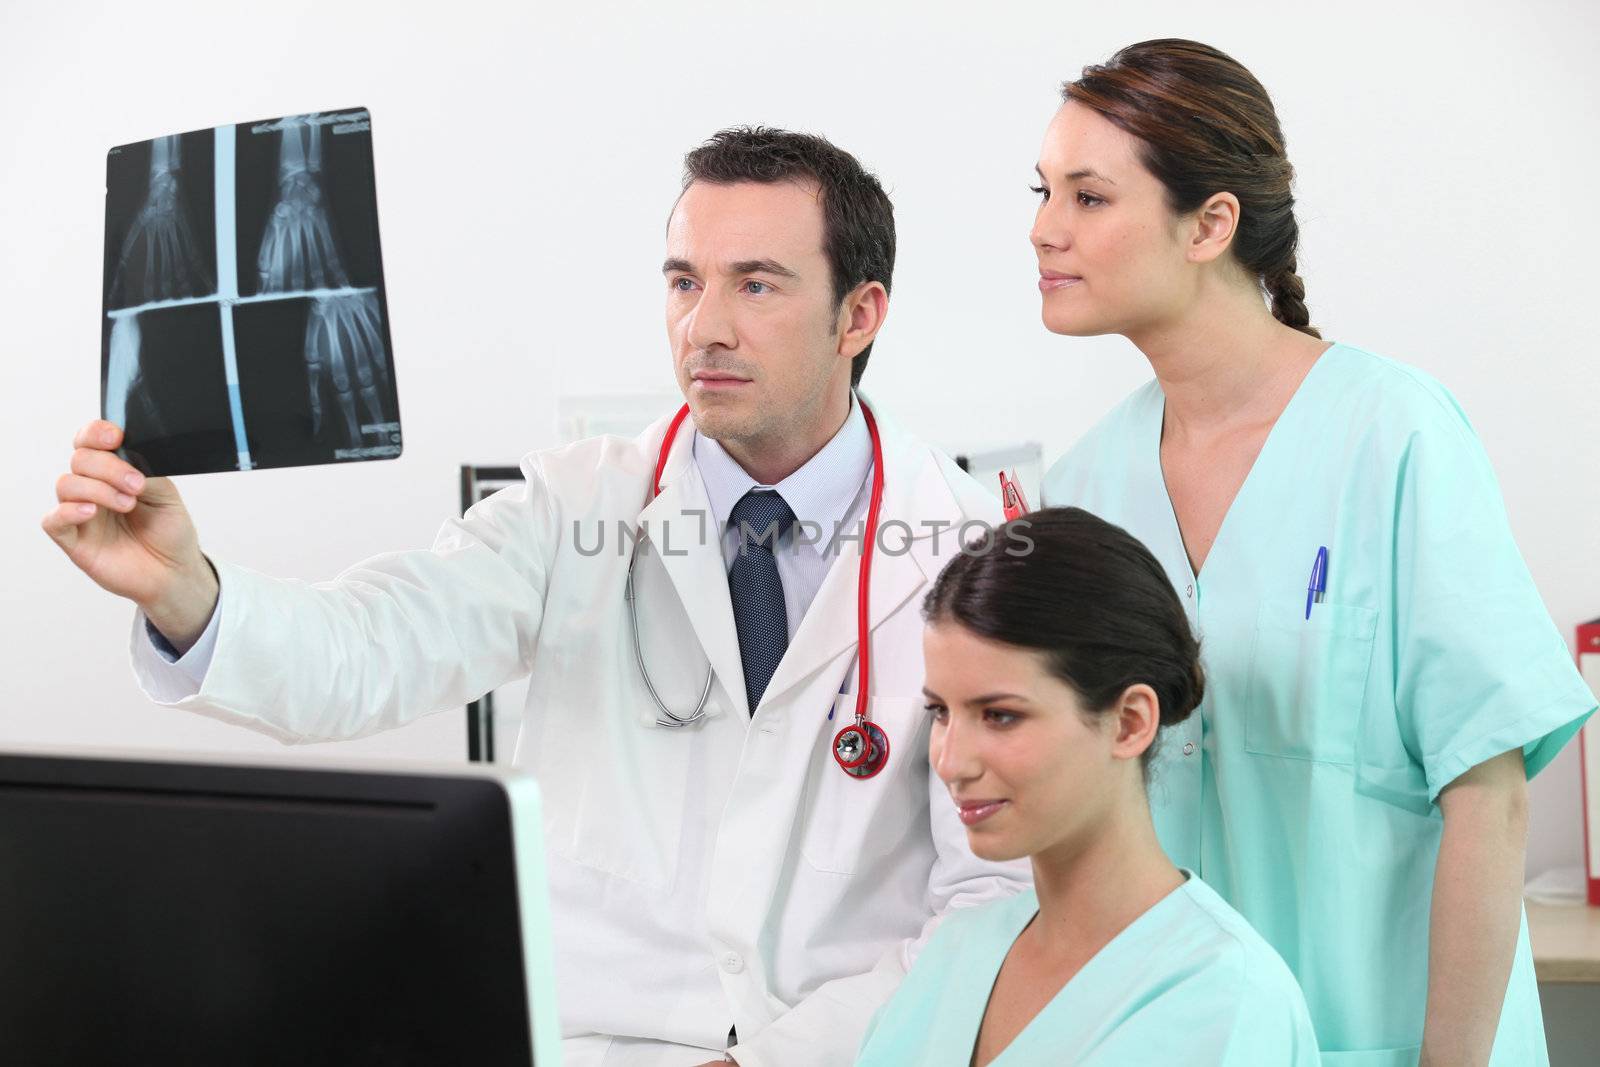 Doctors examining x-ray equipment